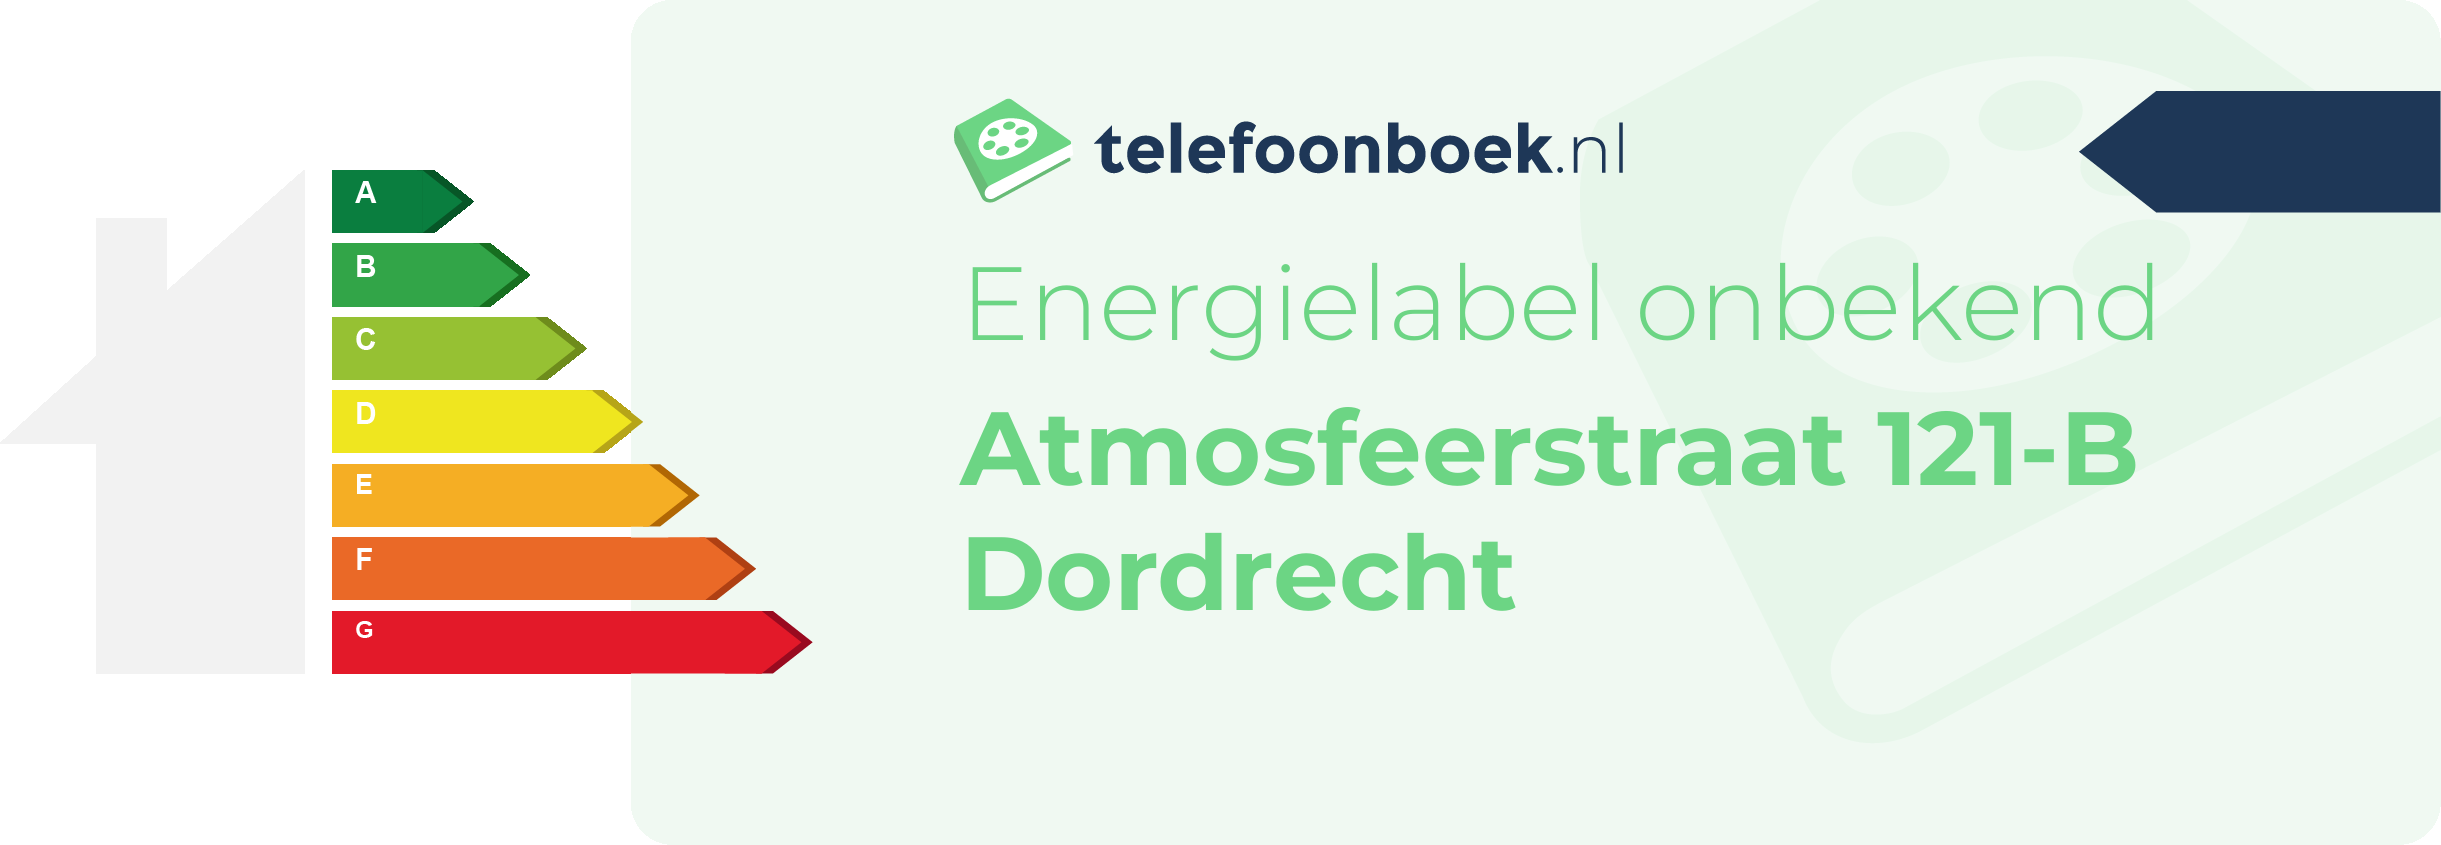 Energielabel Atmosfeerstraat 121-B Dordrecht